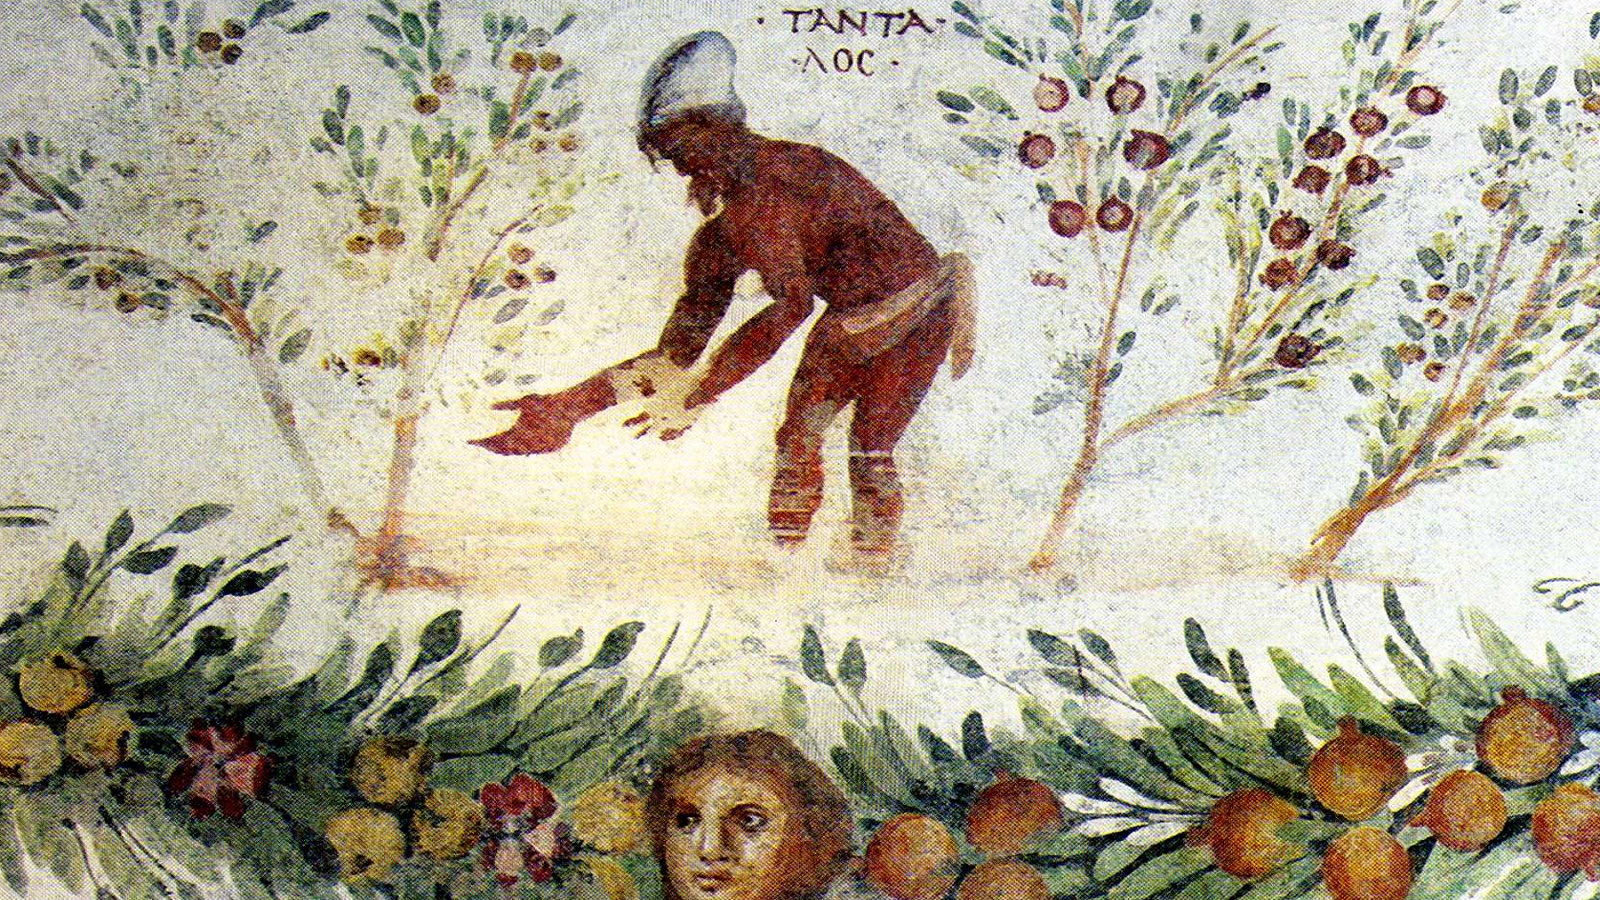  "تانتالوس"، المبتلي بعذاب العطش والجوع في العالم السفلي.